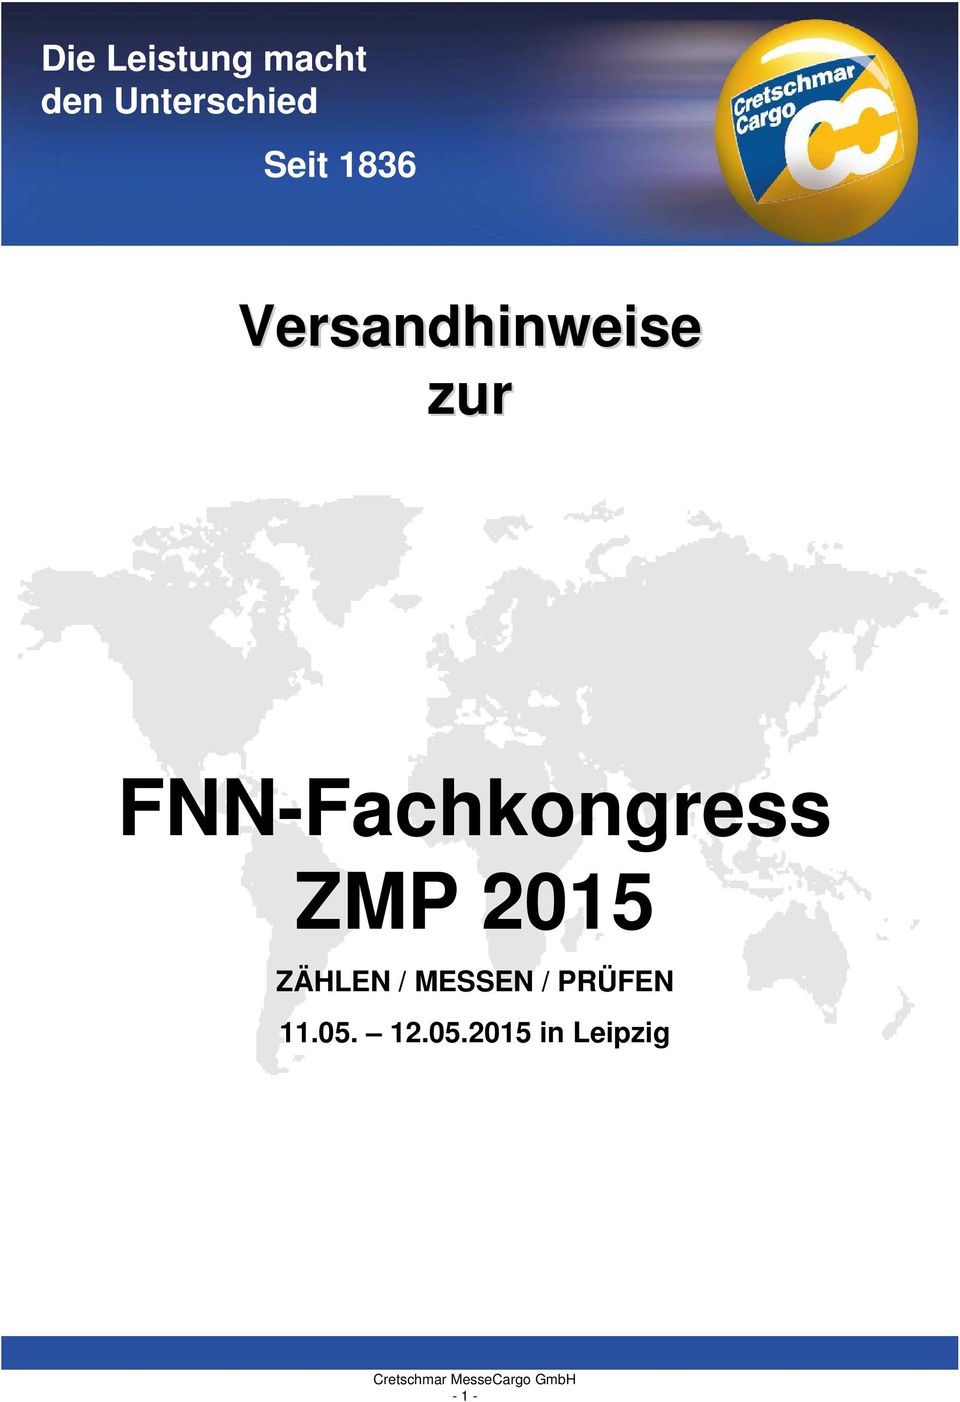 FNN-Fachkongress ZMP 2015 ZÄHLEN /